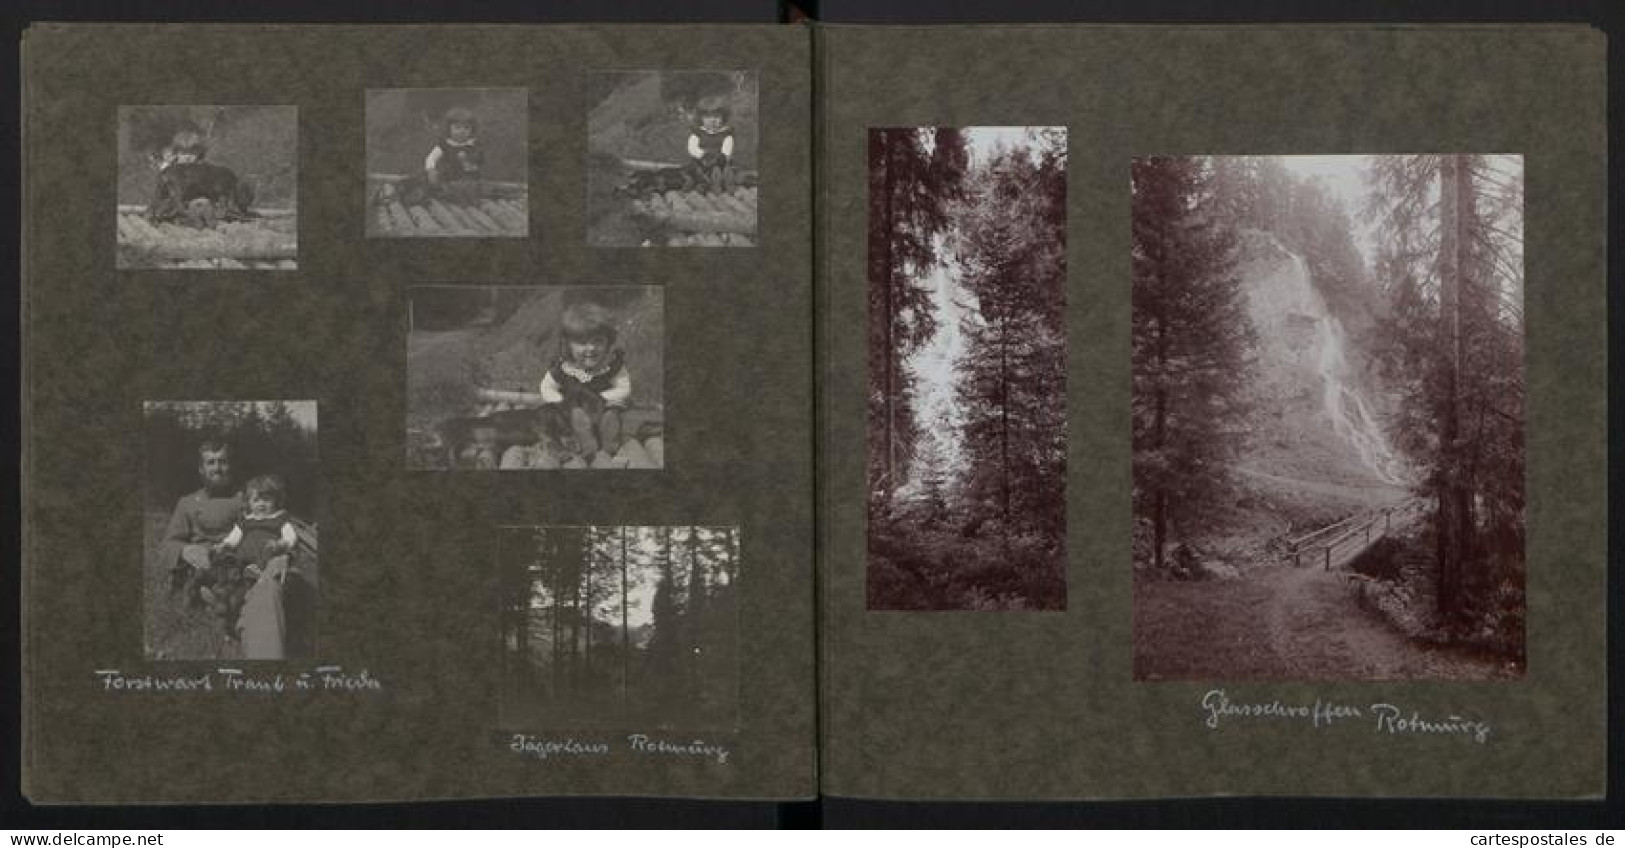 7 Fotoalben mit 381 Fotografien, deutscher Geologe Karl Regelmann, private Aufnahmen von 1850-1903, Vermessung, Geräte 